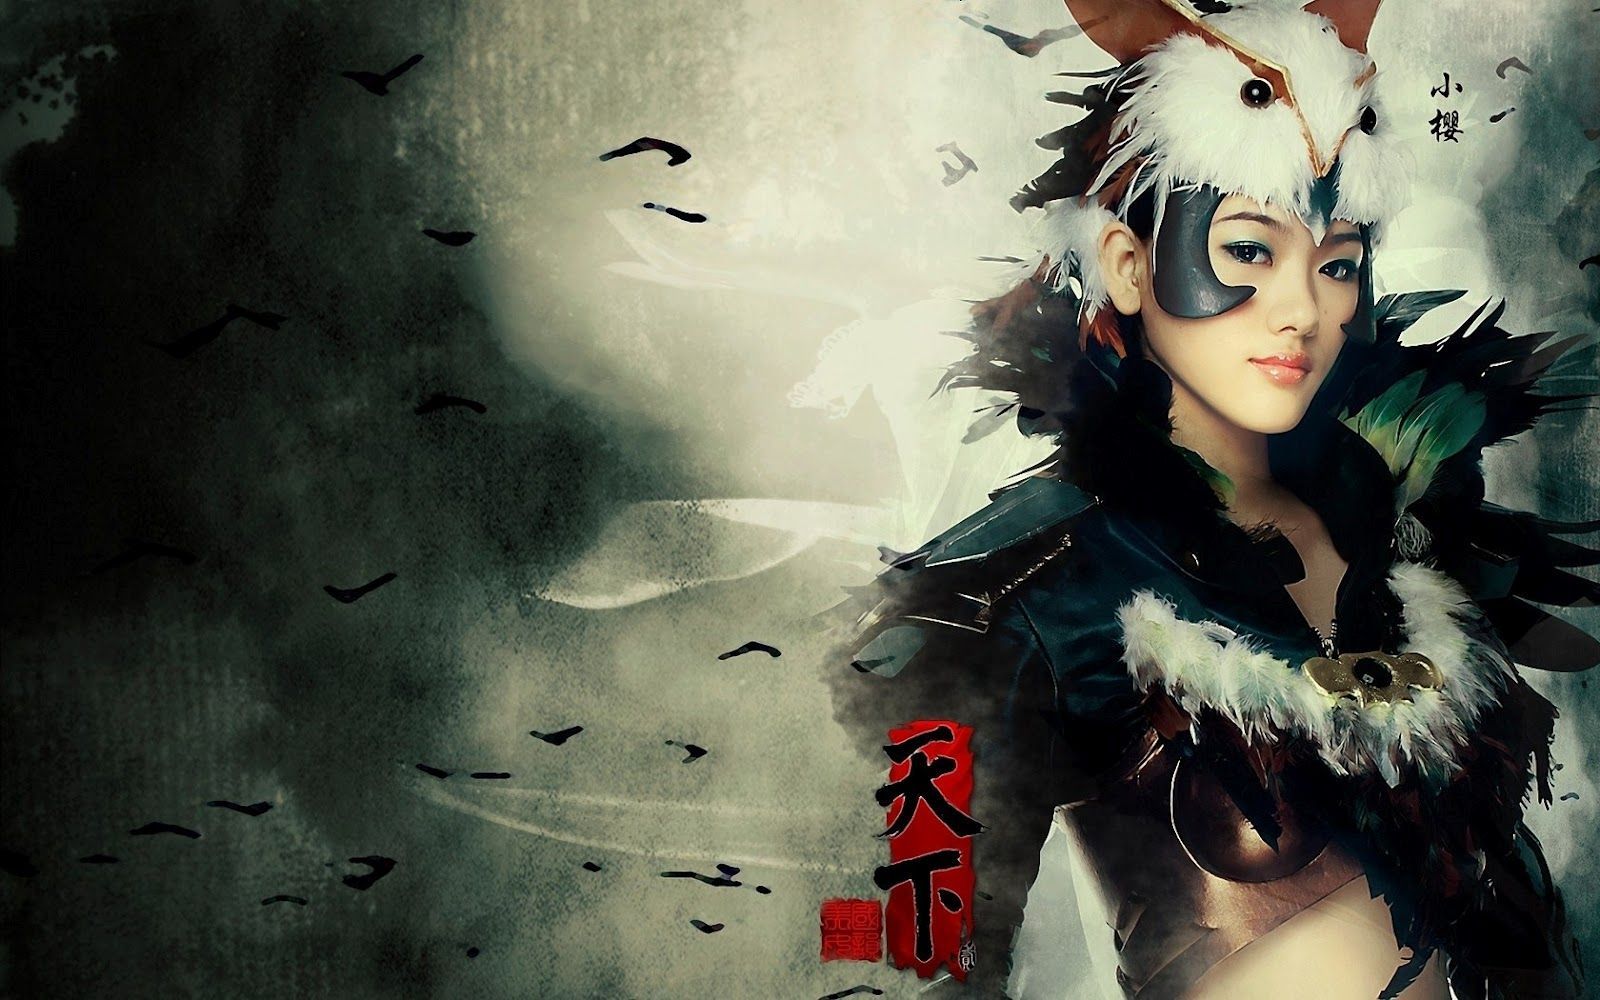 Warrior Japanese Girl Wallpaper (1600×1000). Anime Wallpaper, Cosplay Anime, Cool Anime Wallpaper